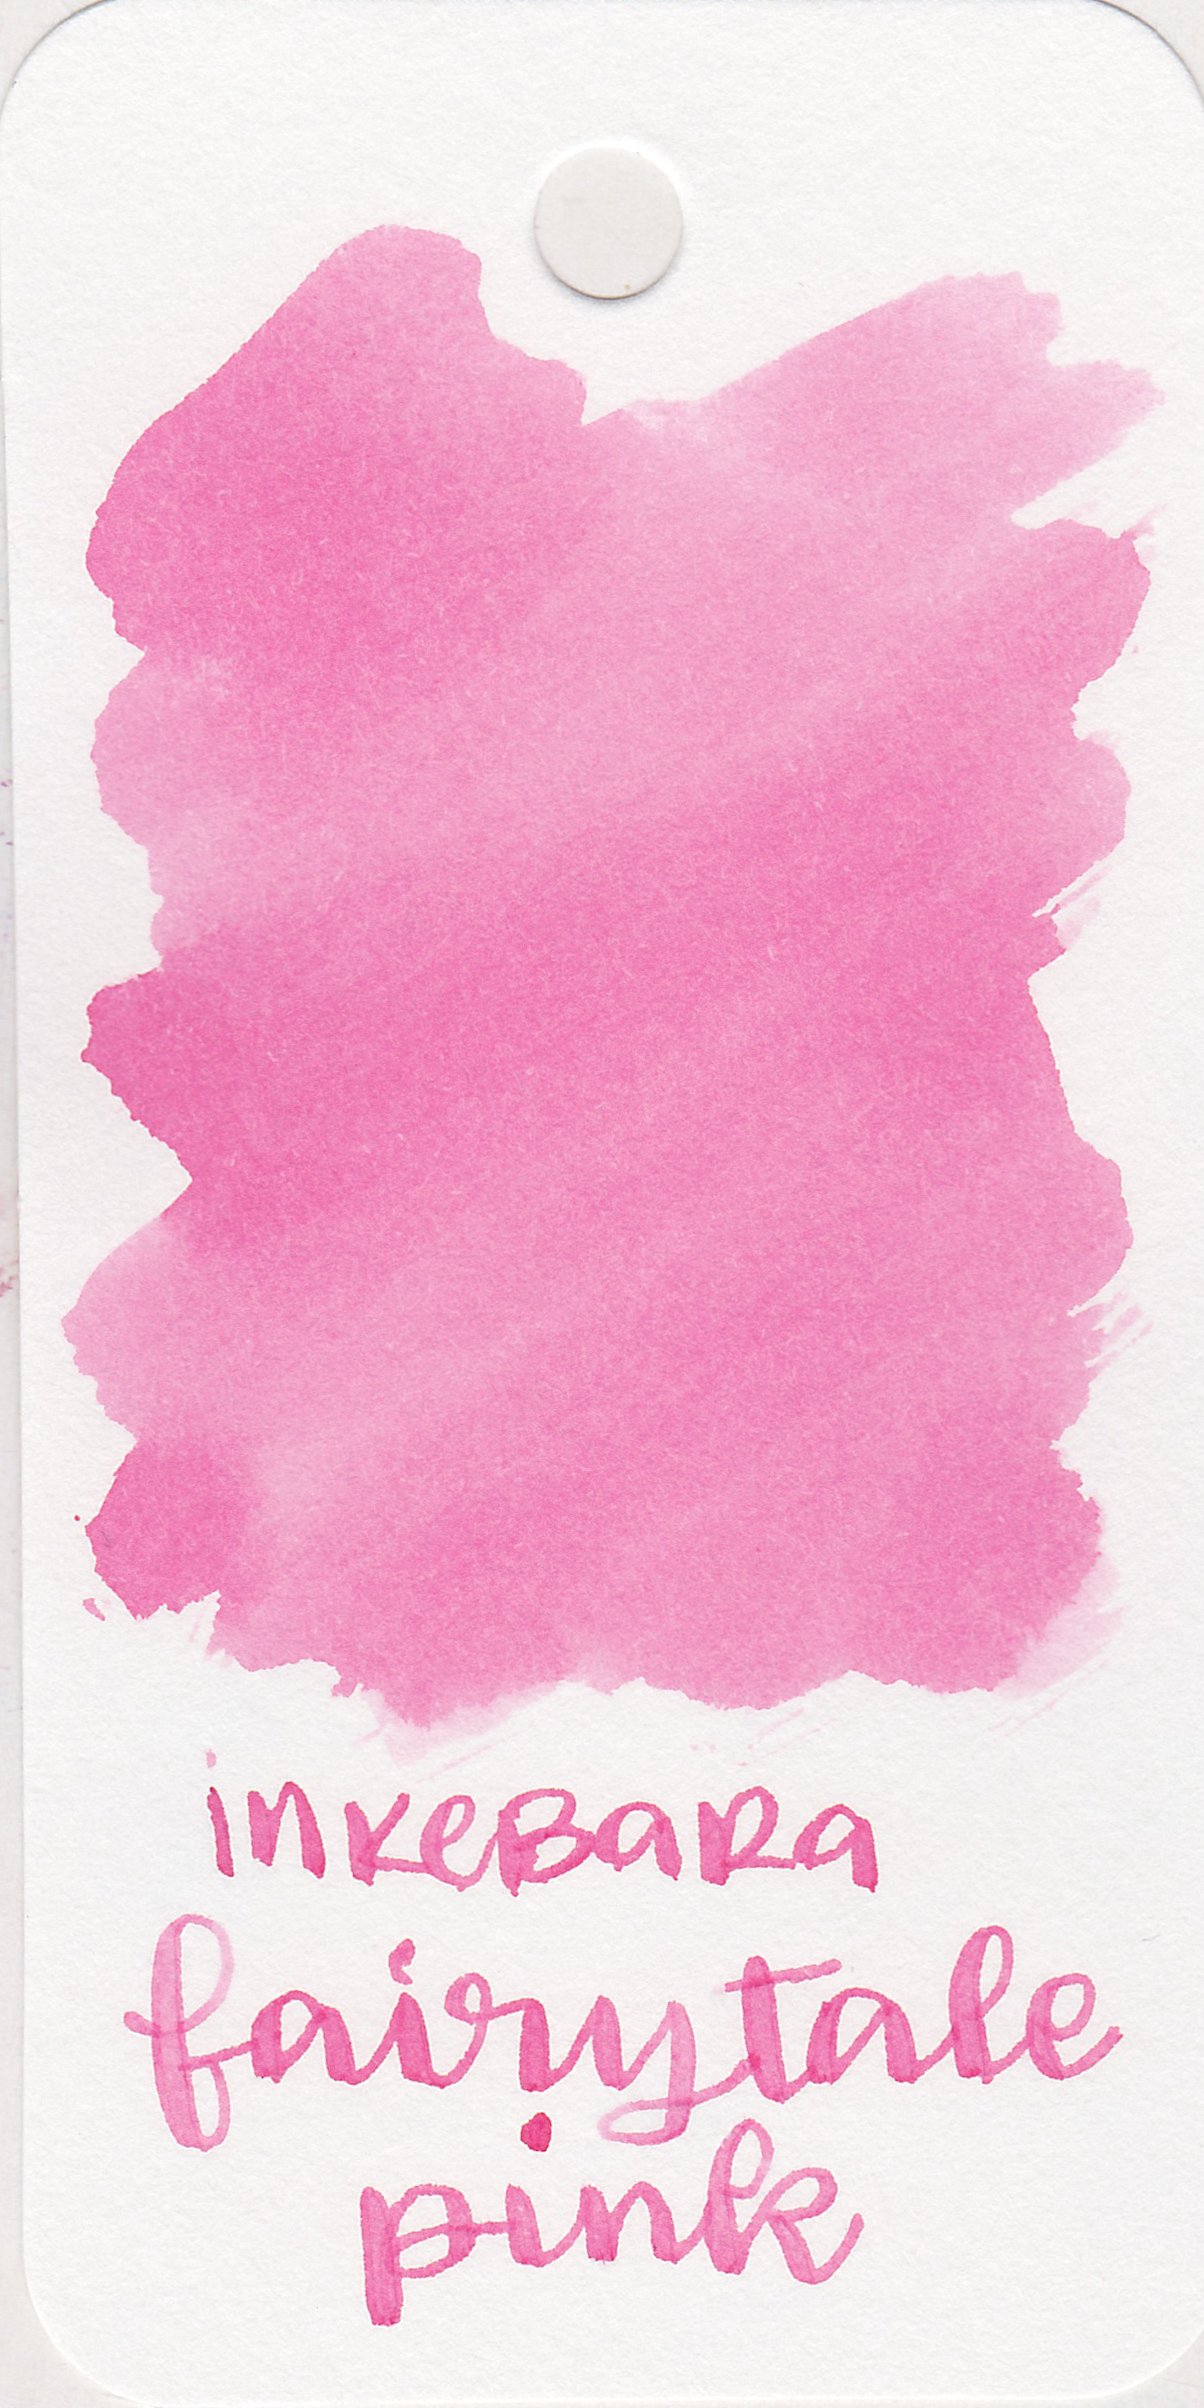 ink-fairytale-pink-1.jpg